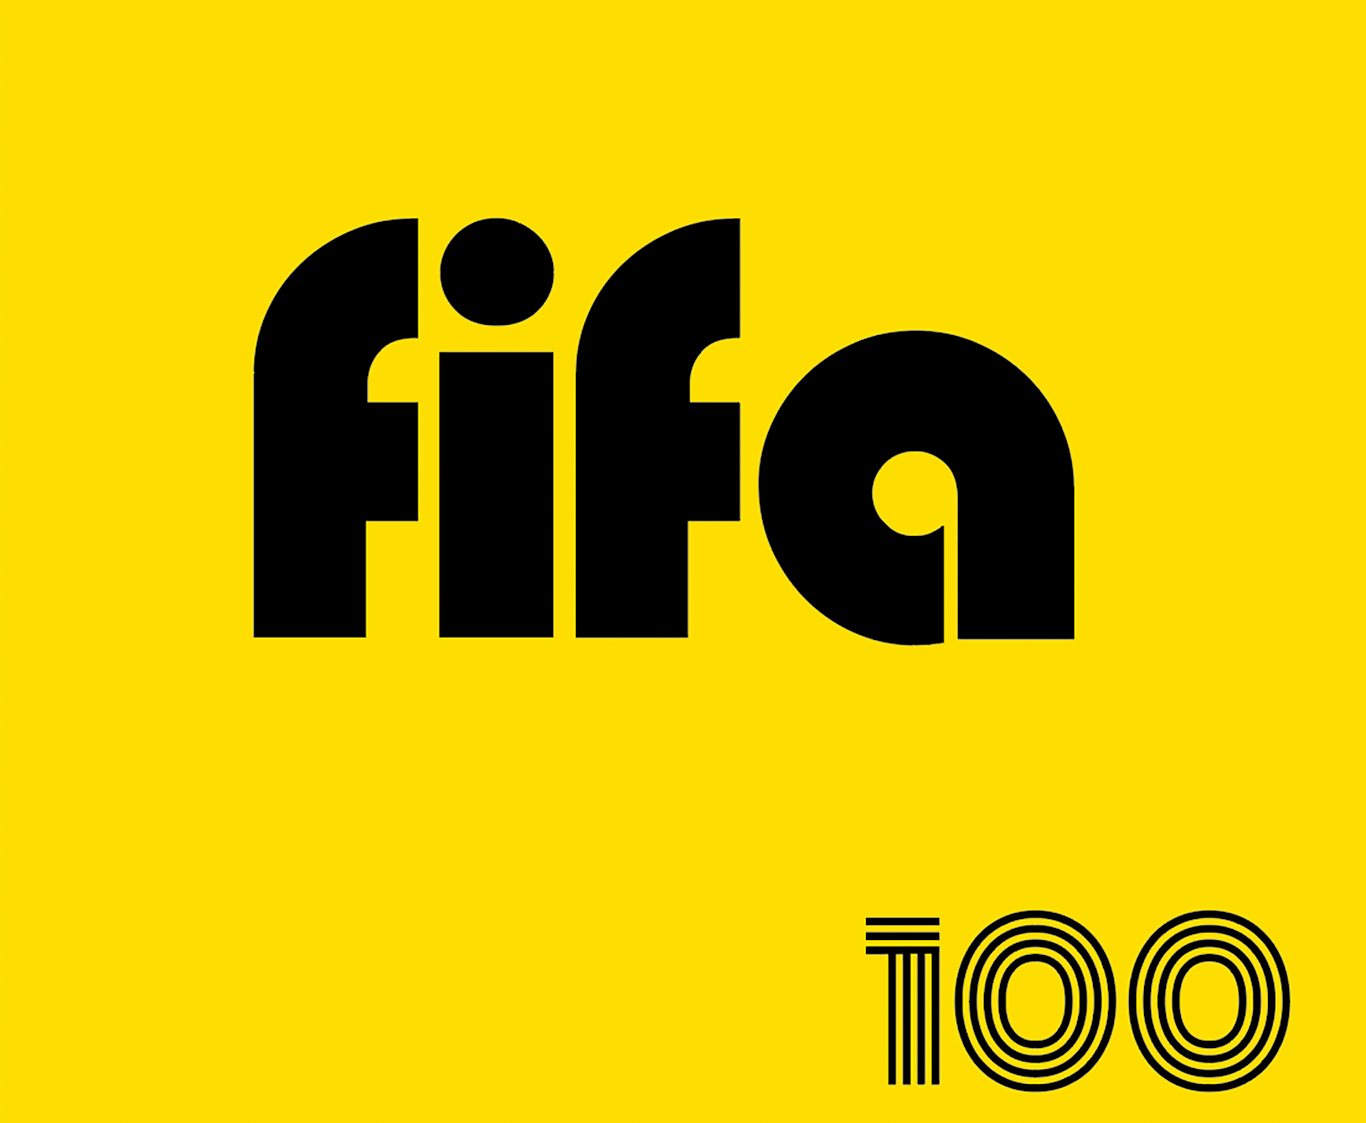 FIFA Records